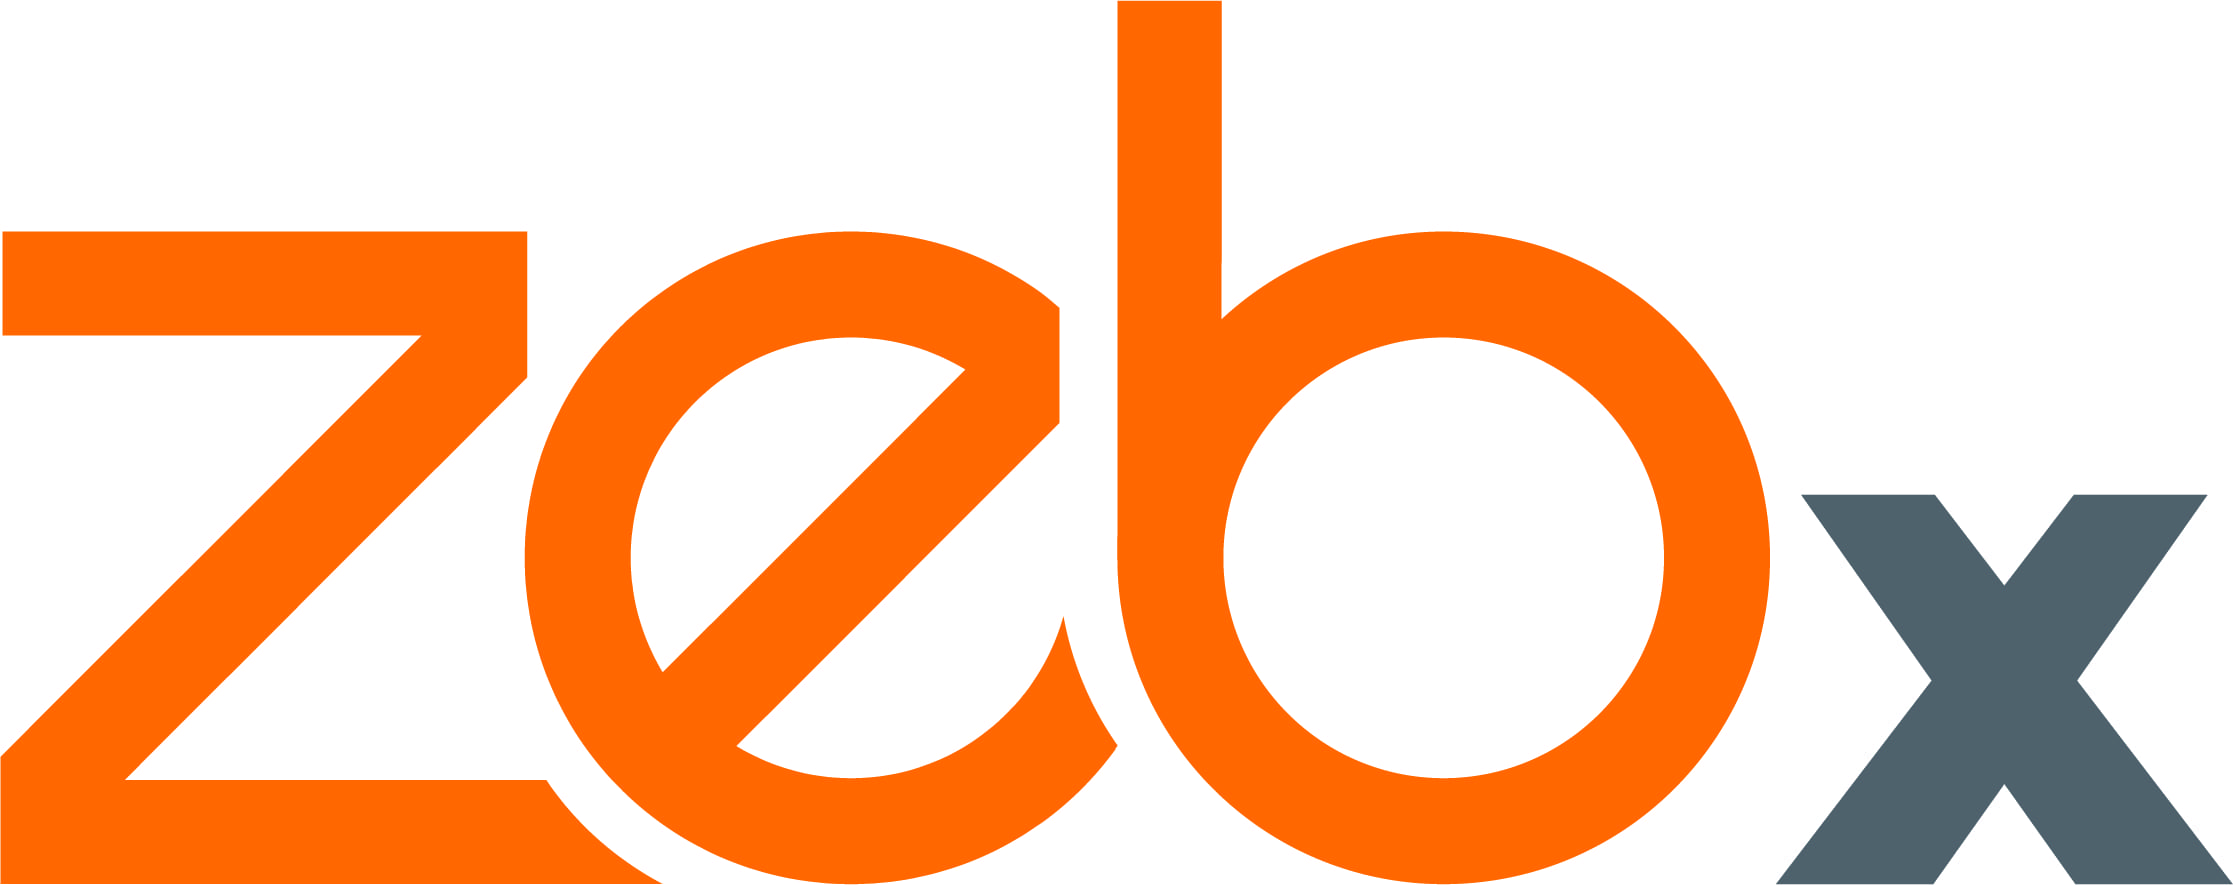 zebx logo